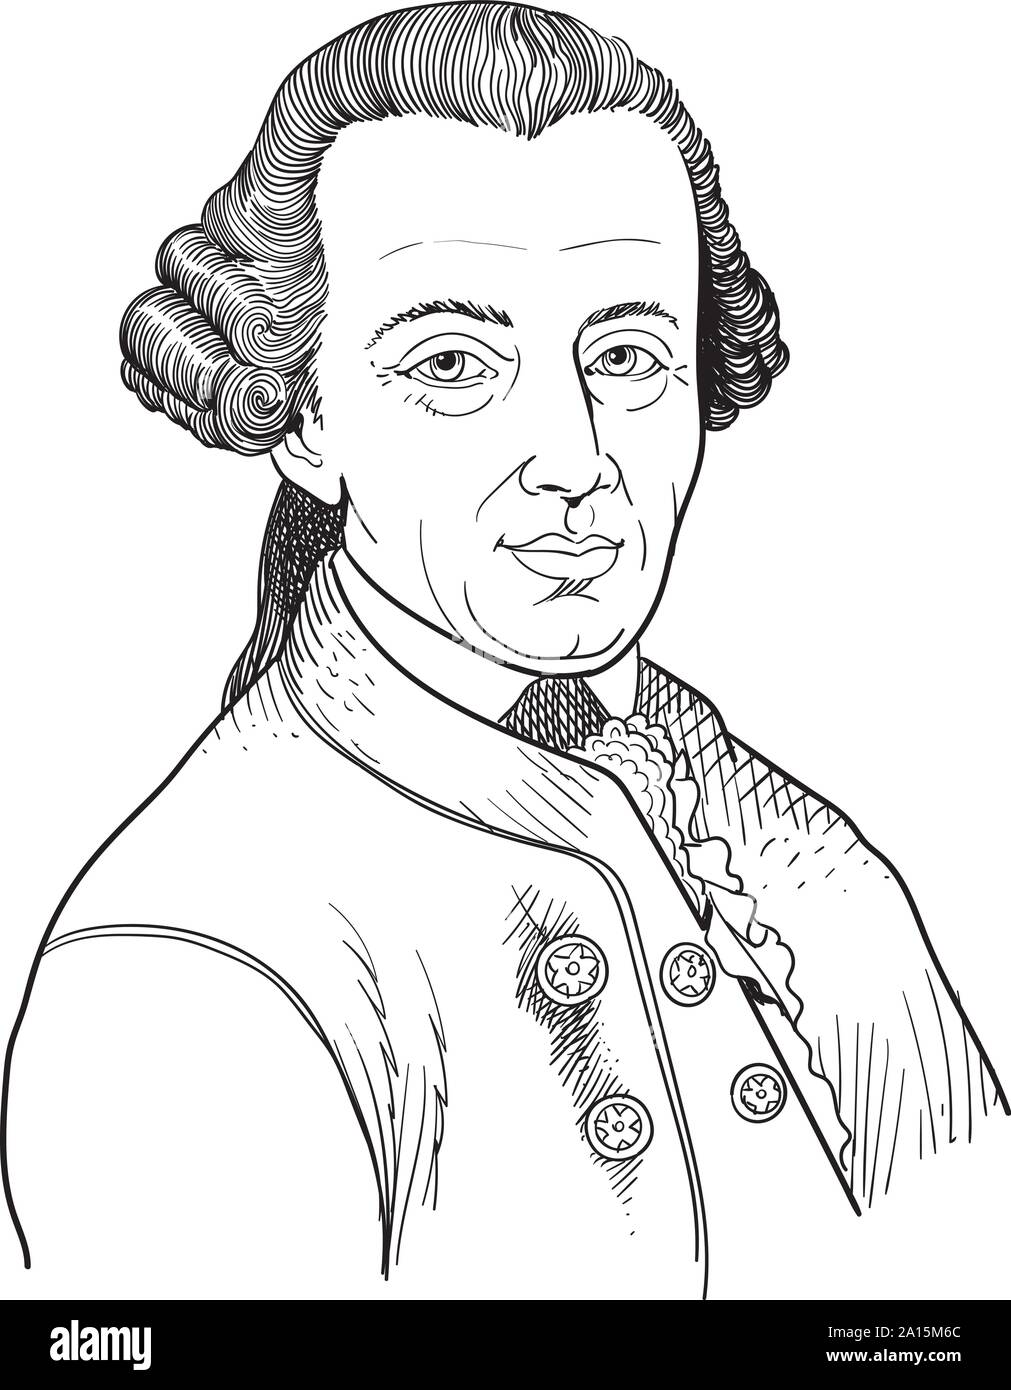 Immanuel Kant isoliert cartoon Portrait, Vektor Stock Vektor